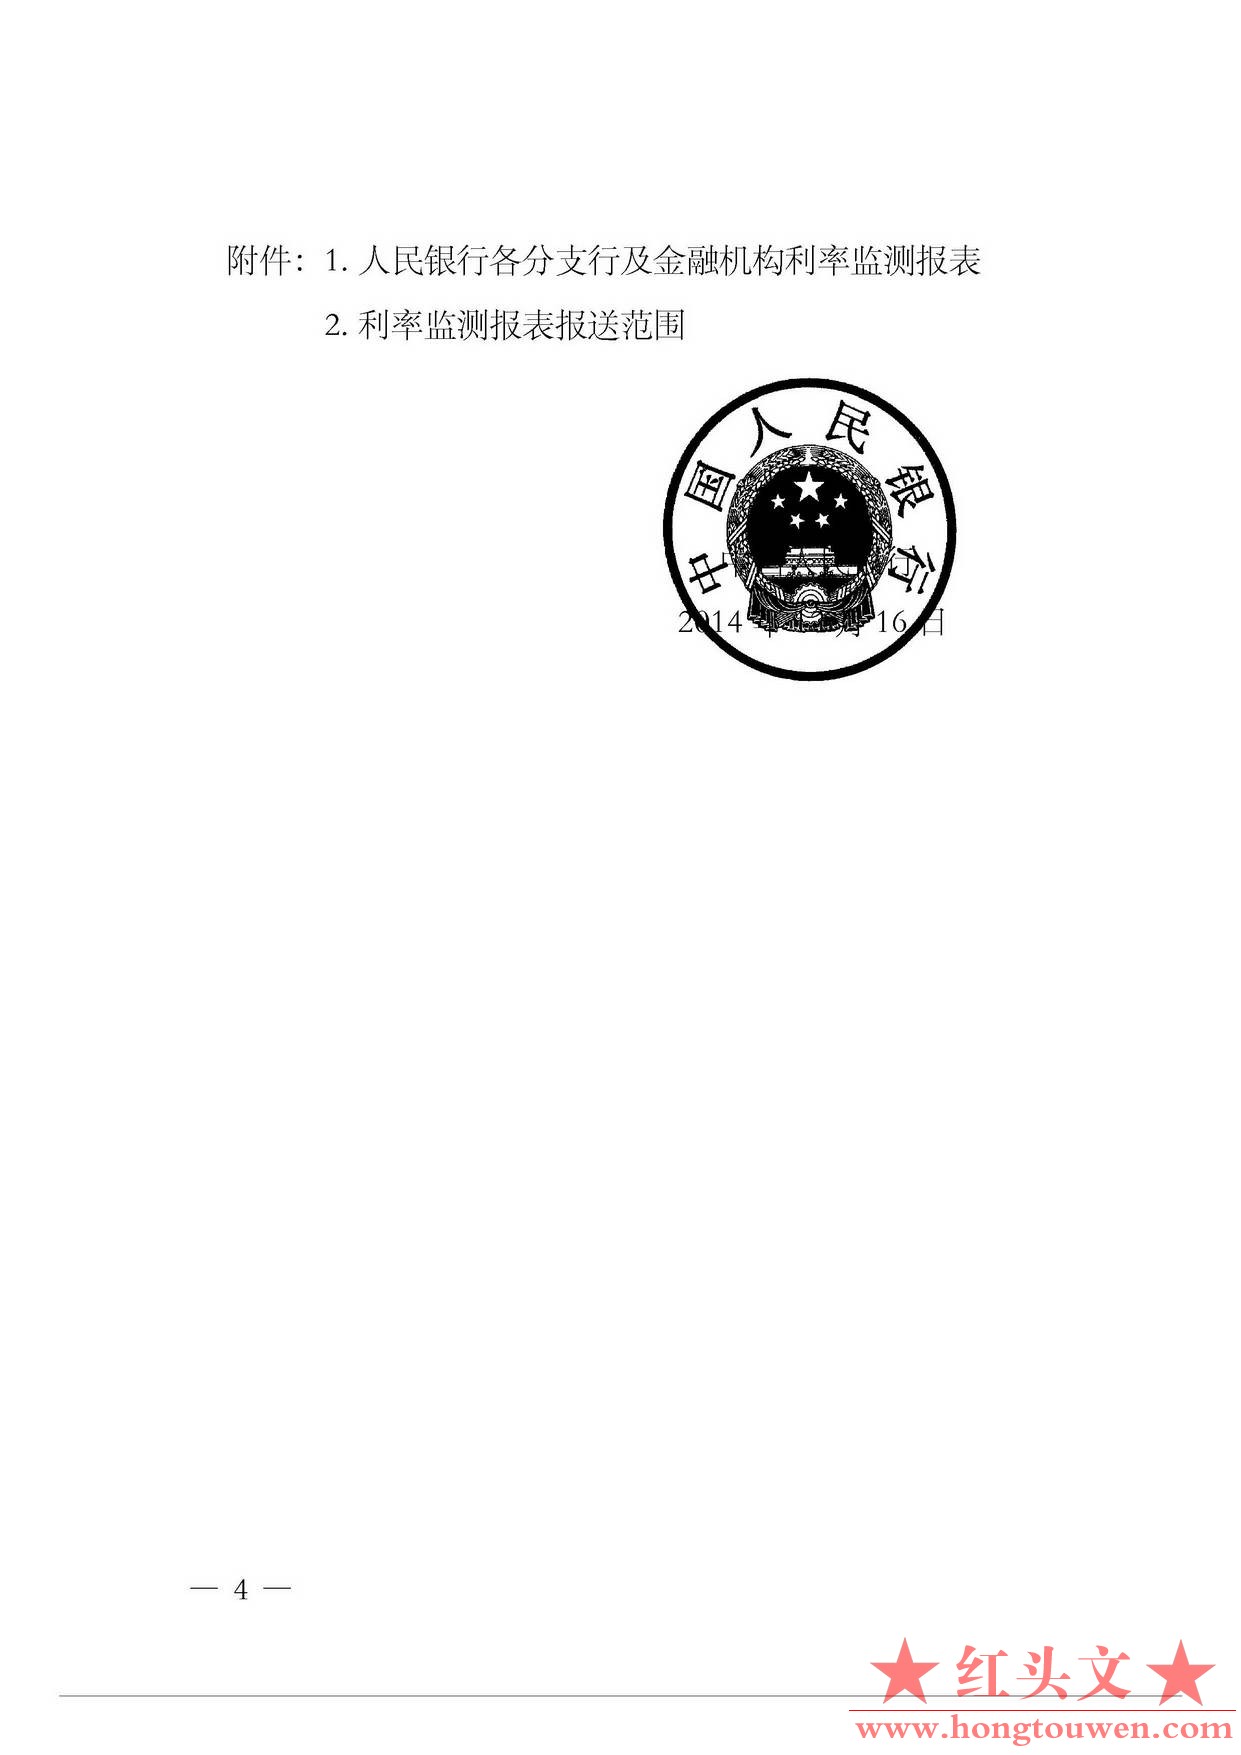 银发[2014]375号-中国人民银行关于进一步完善利率监测报备制度的通知_页面_4.jpg.jpg